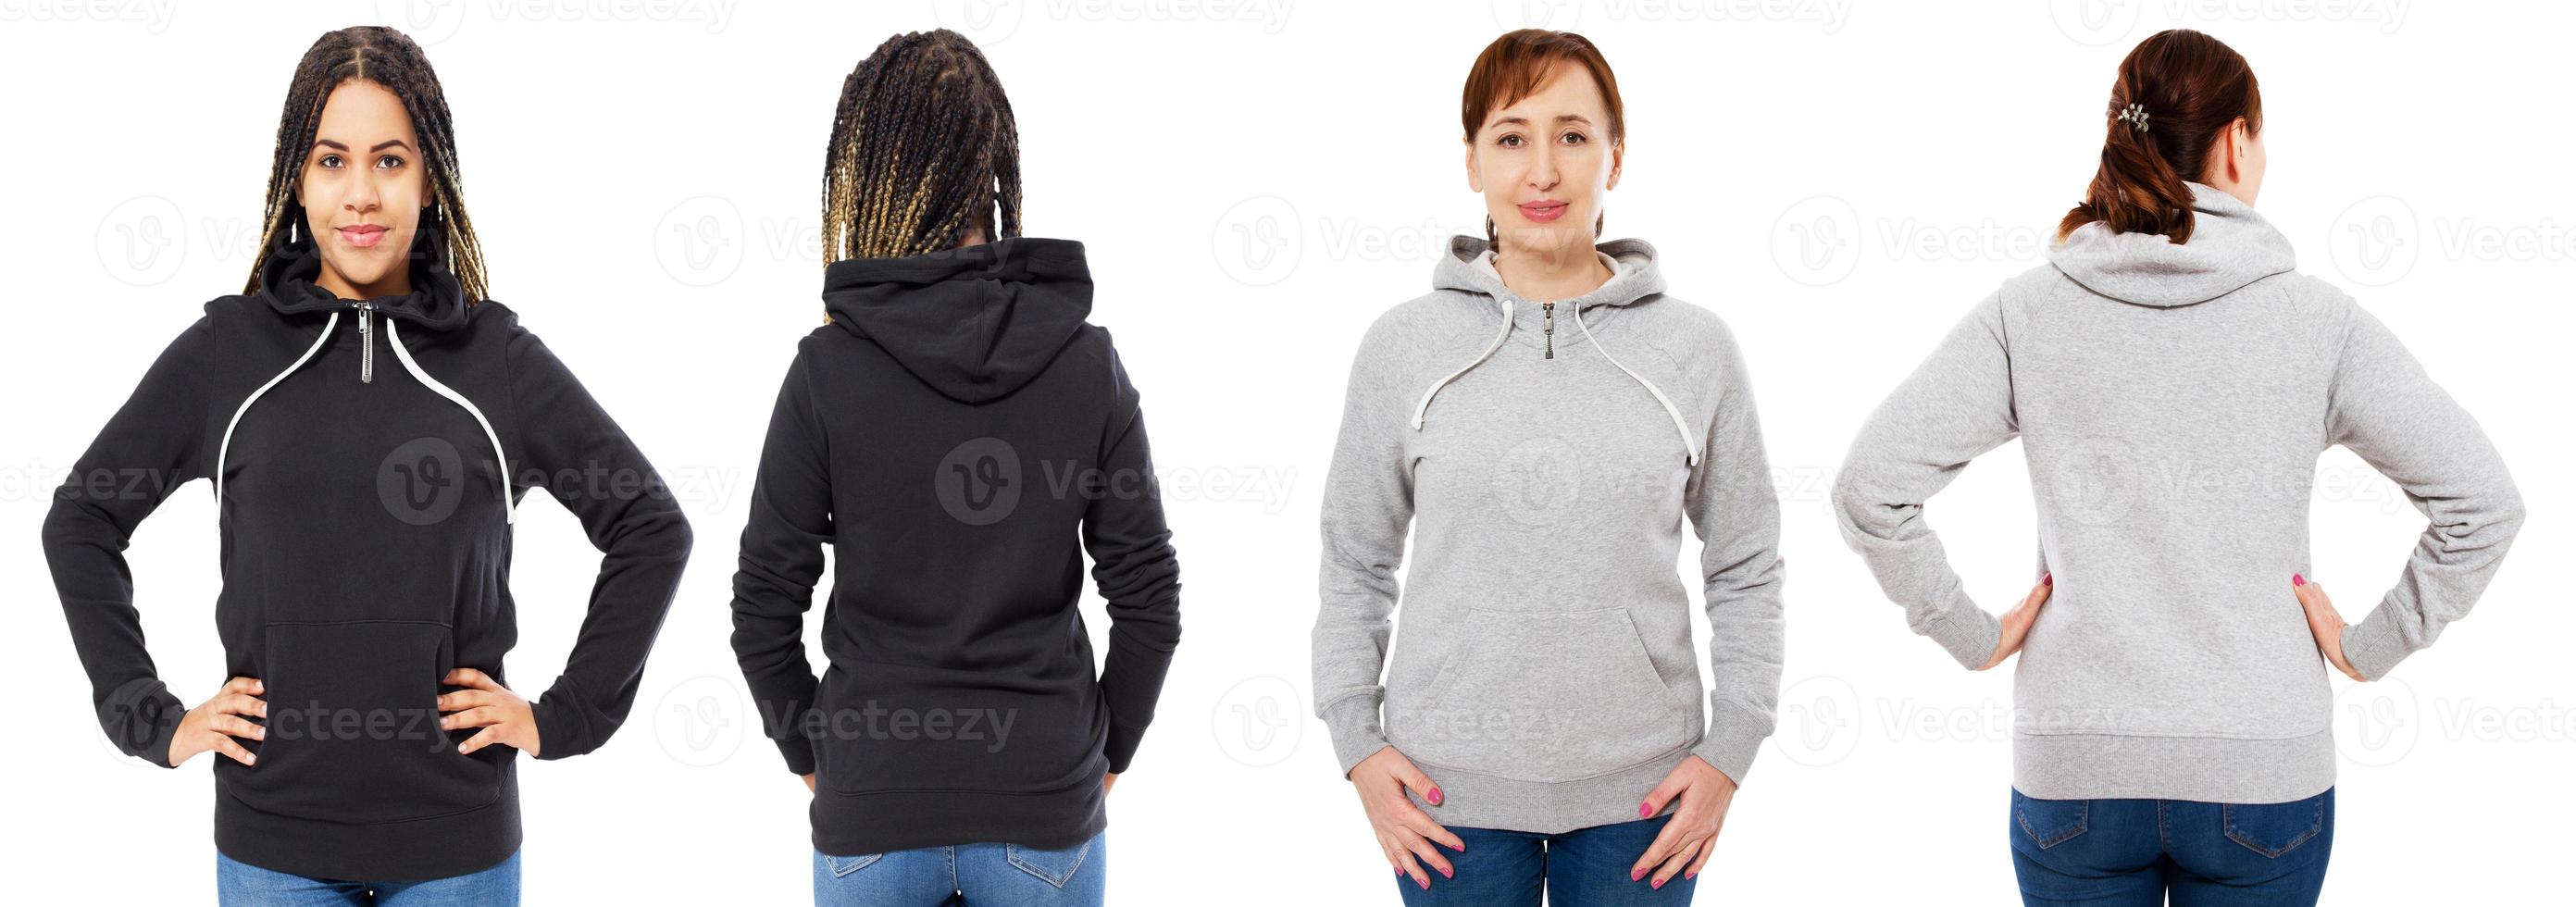 vrouwelijke kap collage voor- en achteraanzicht geïsoleerd - blanke en zwarte vrouw in hoodie mock up foto